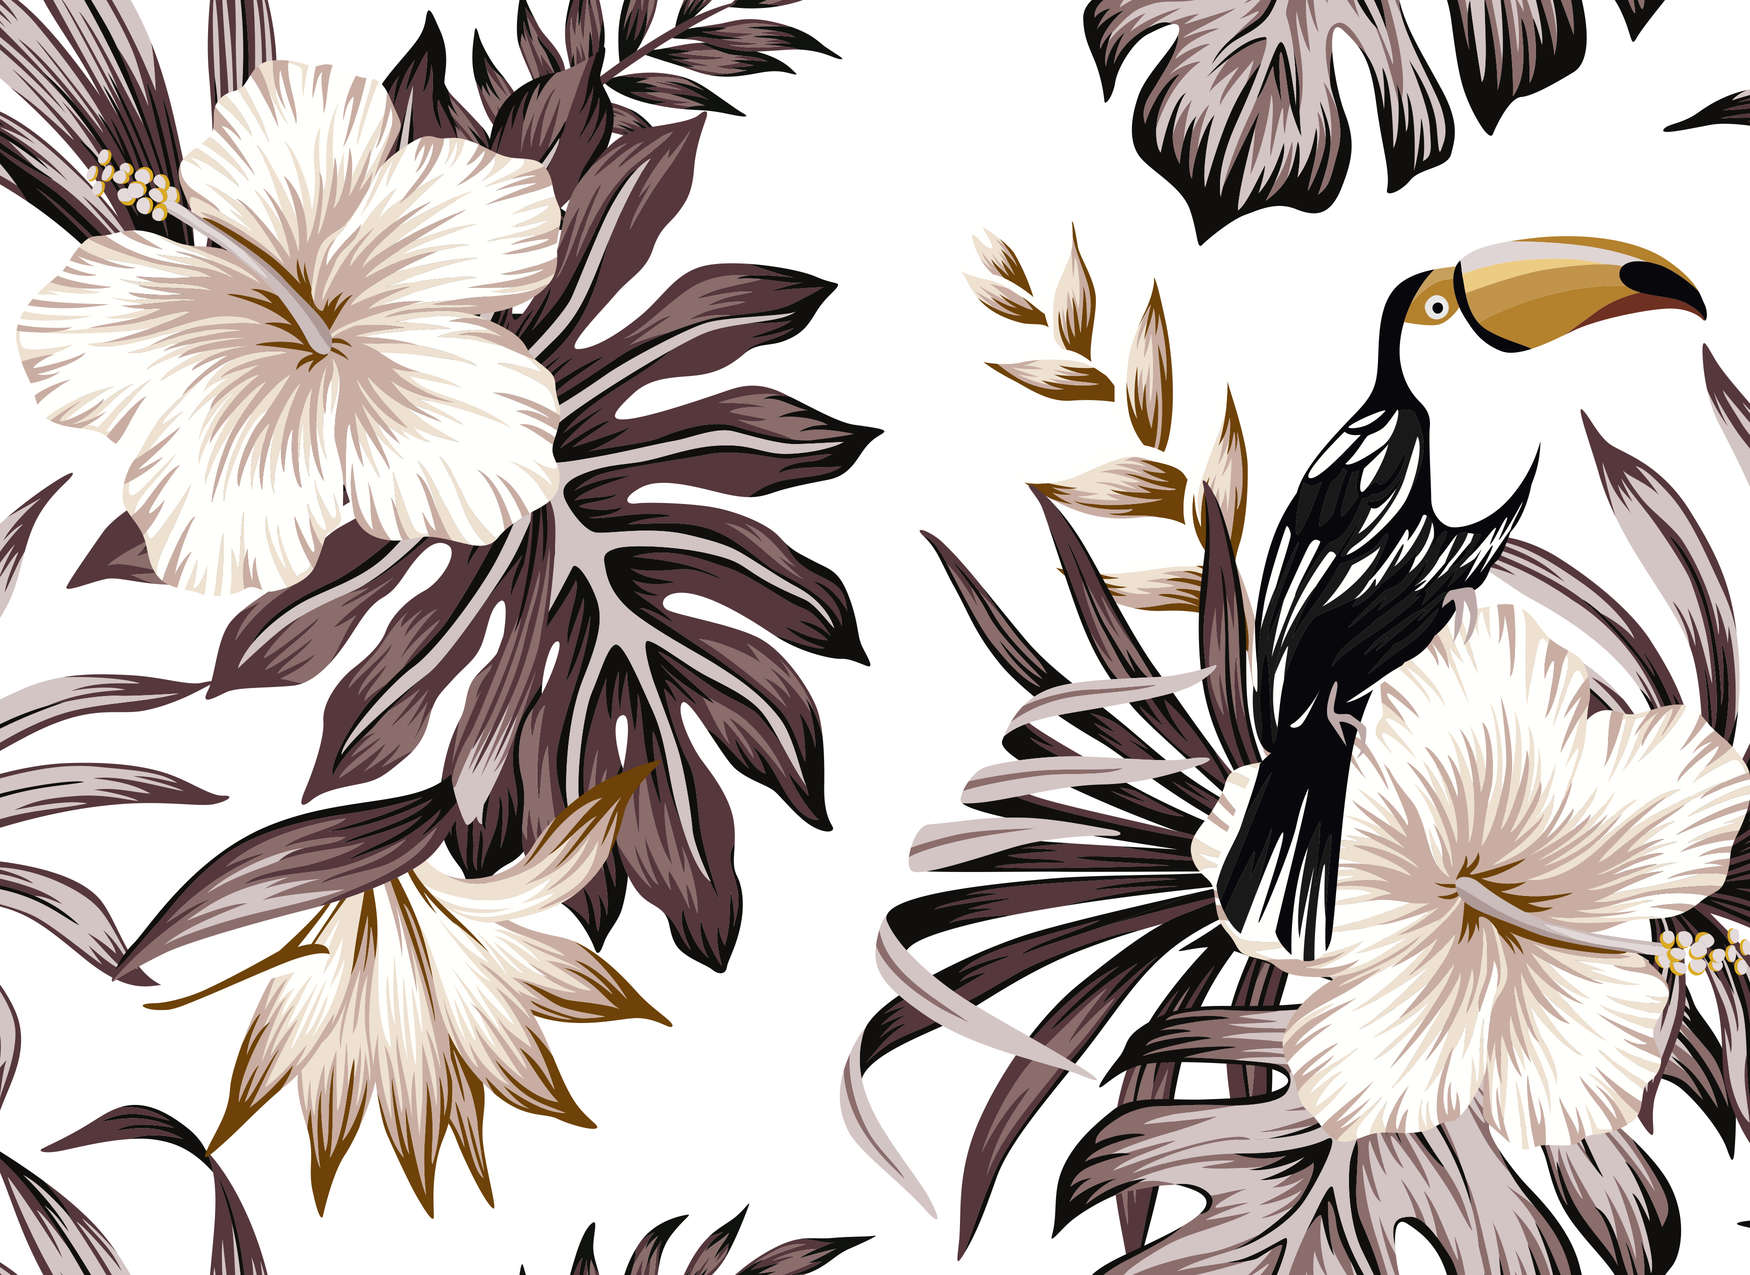             Dschungelpflanzen und Pelikan – Grau, Weiß, Schwarz
        